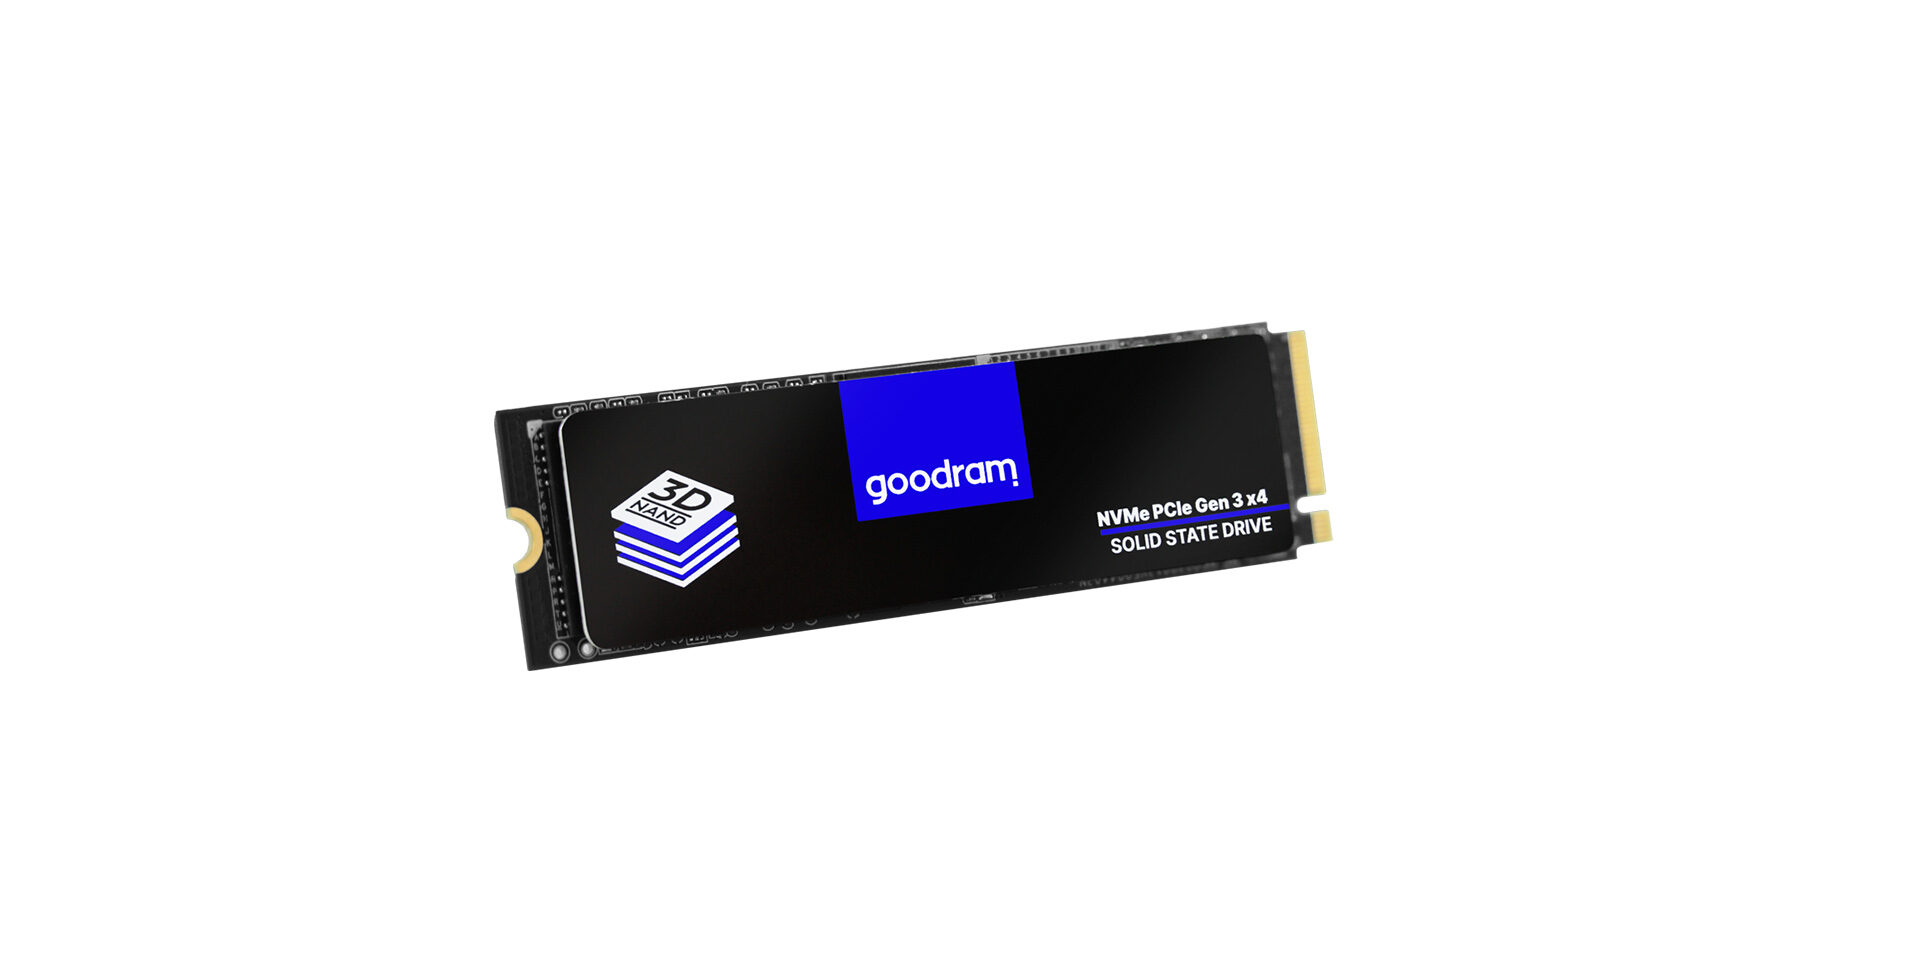 Goodram PX500 gen.2 M.2 SSD